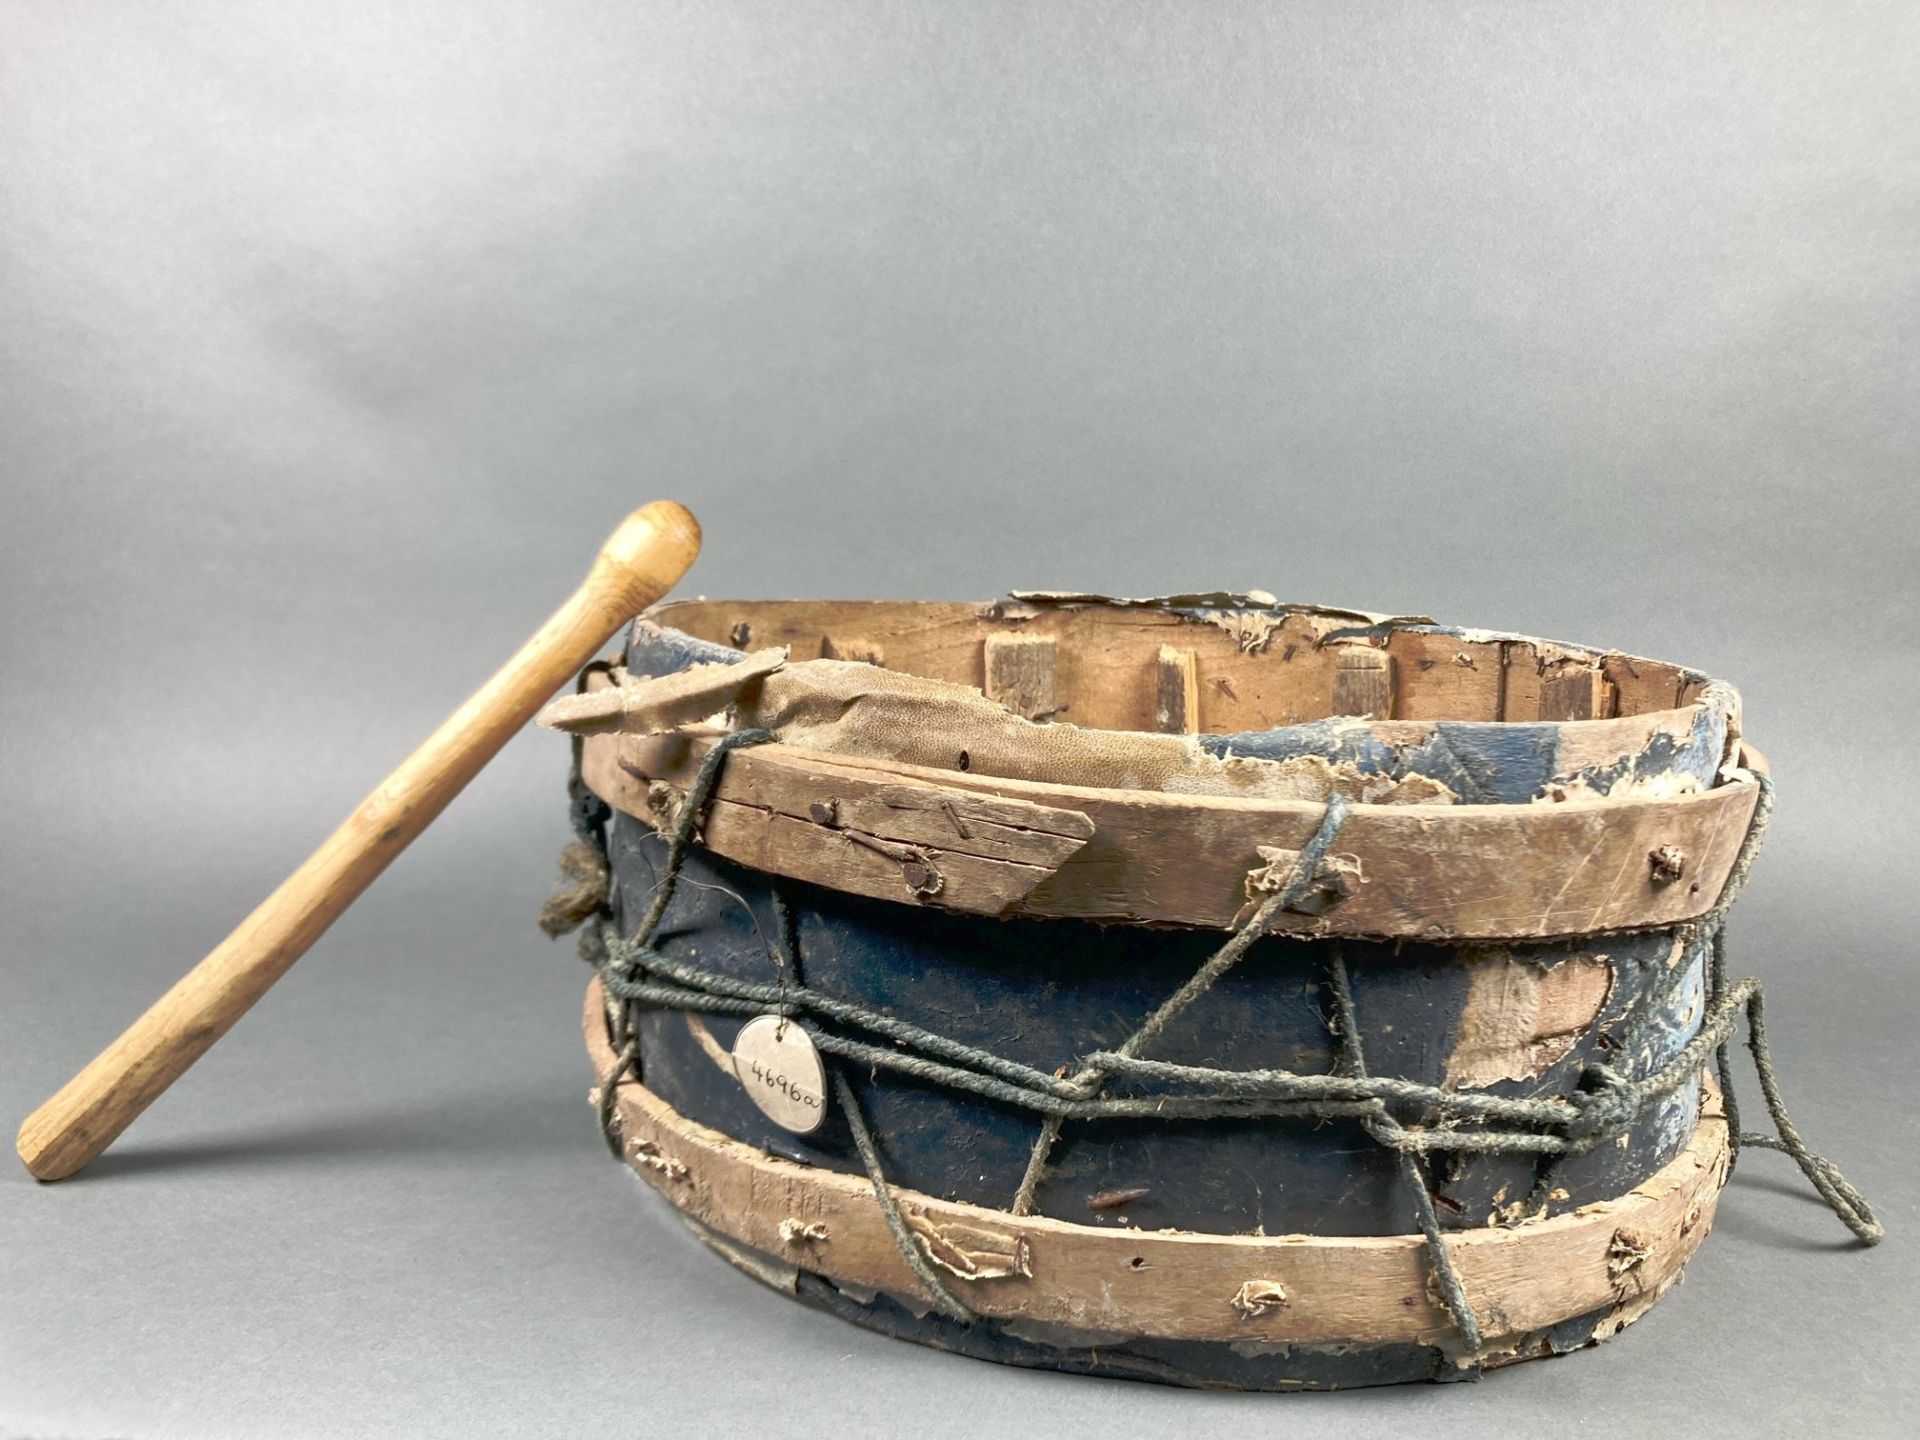 Musikinstrumente, die in Ostbulgarien im Rahmen der thrakischen Feuertanzzeremonie, dem sog. „Nestinarstvo“, gesammelt wurden. Mit Fotografien illustrierte Küppers viele der von ihm erworbenen Objekte.